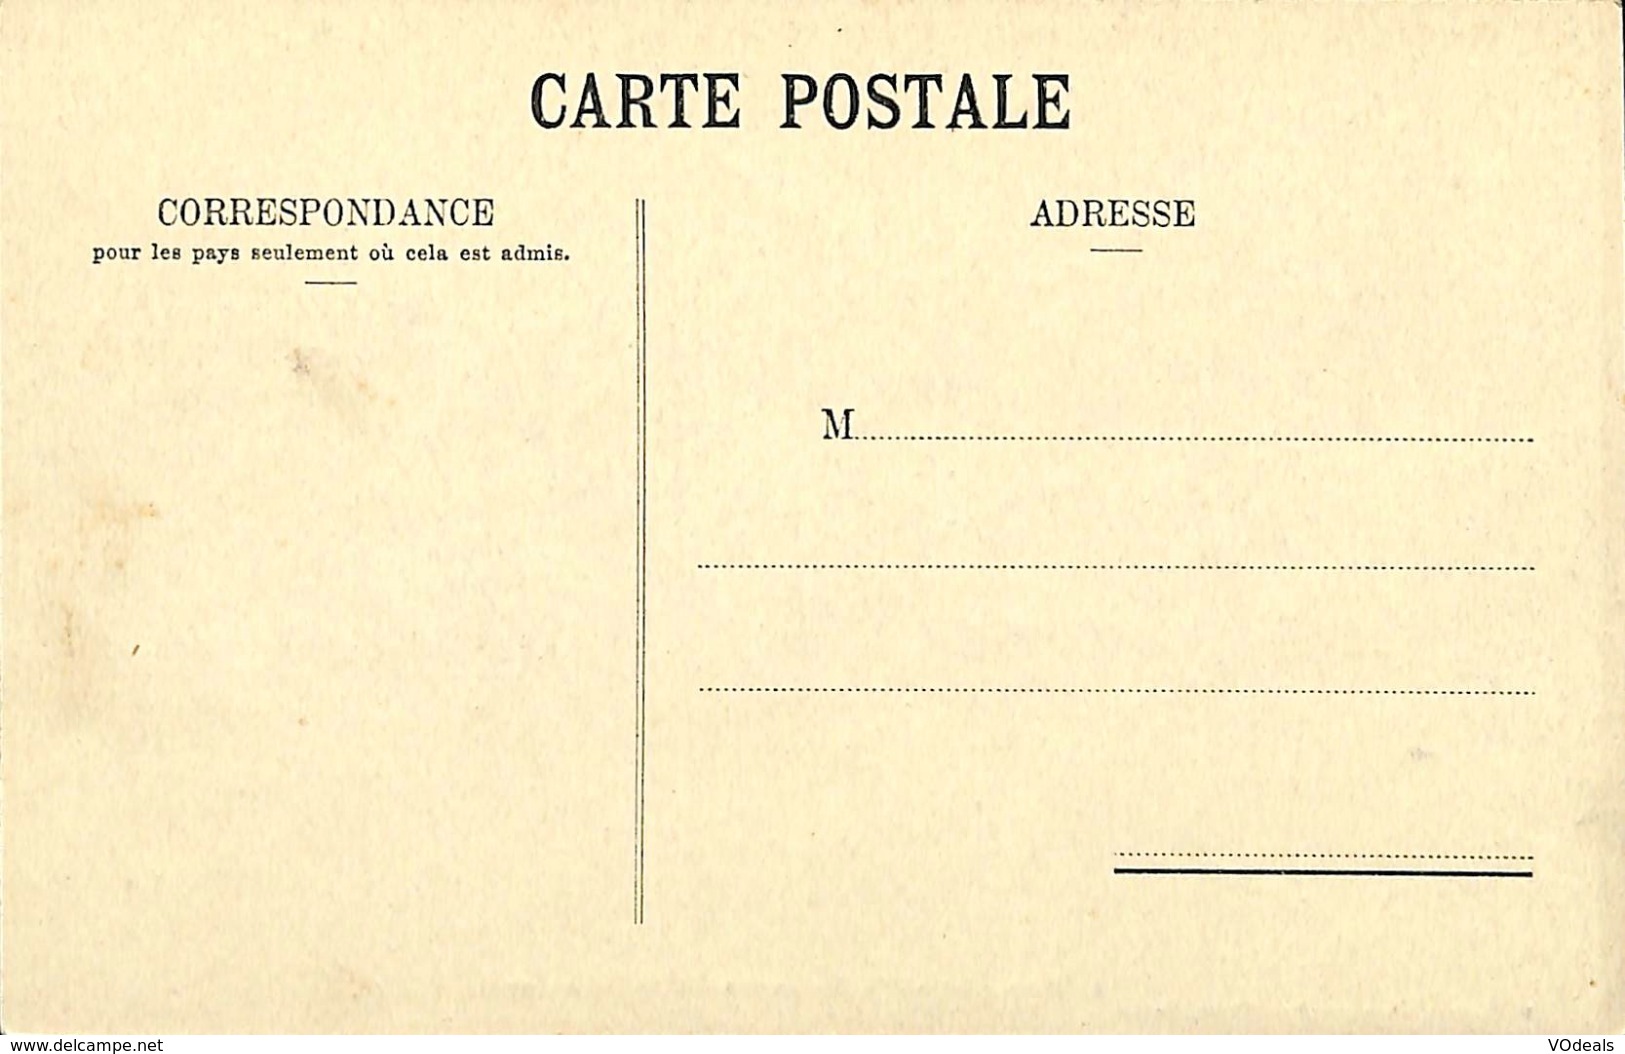 CPA - France - Lot de 10 cartes postales - Lot 01